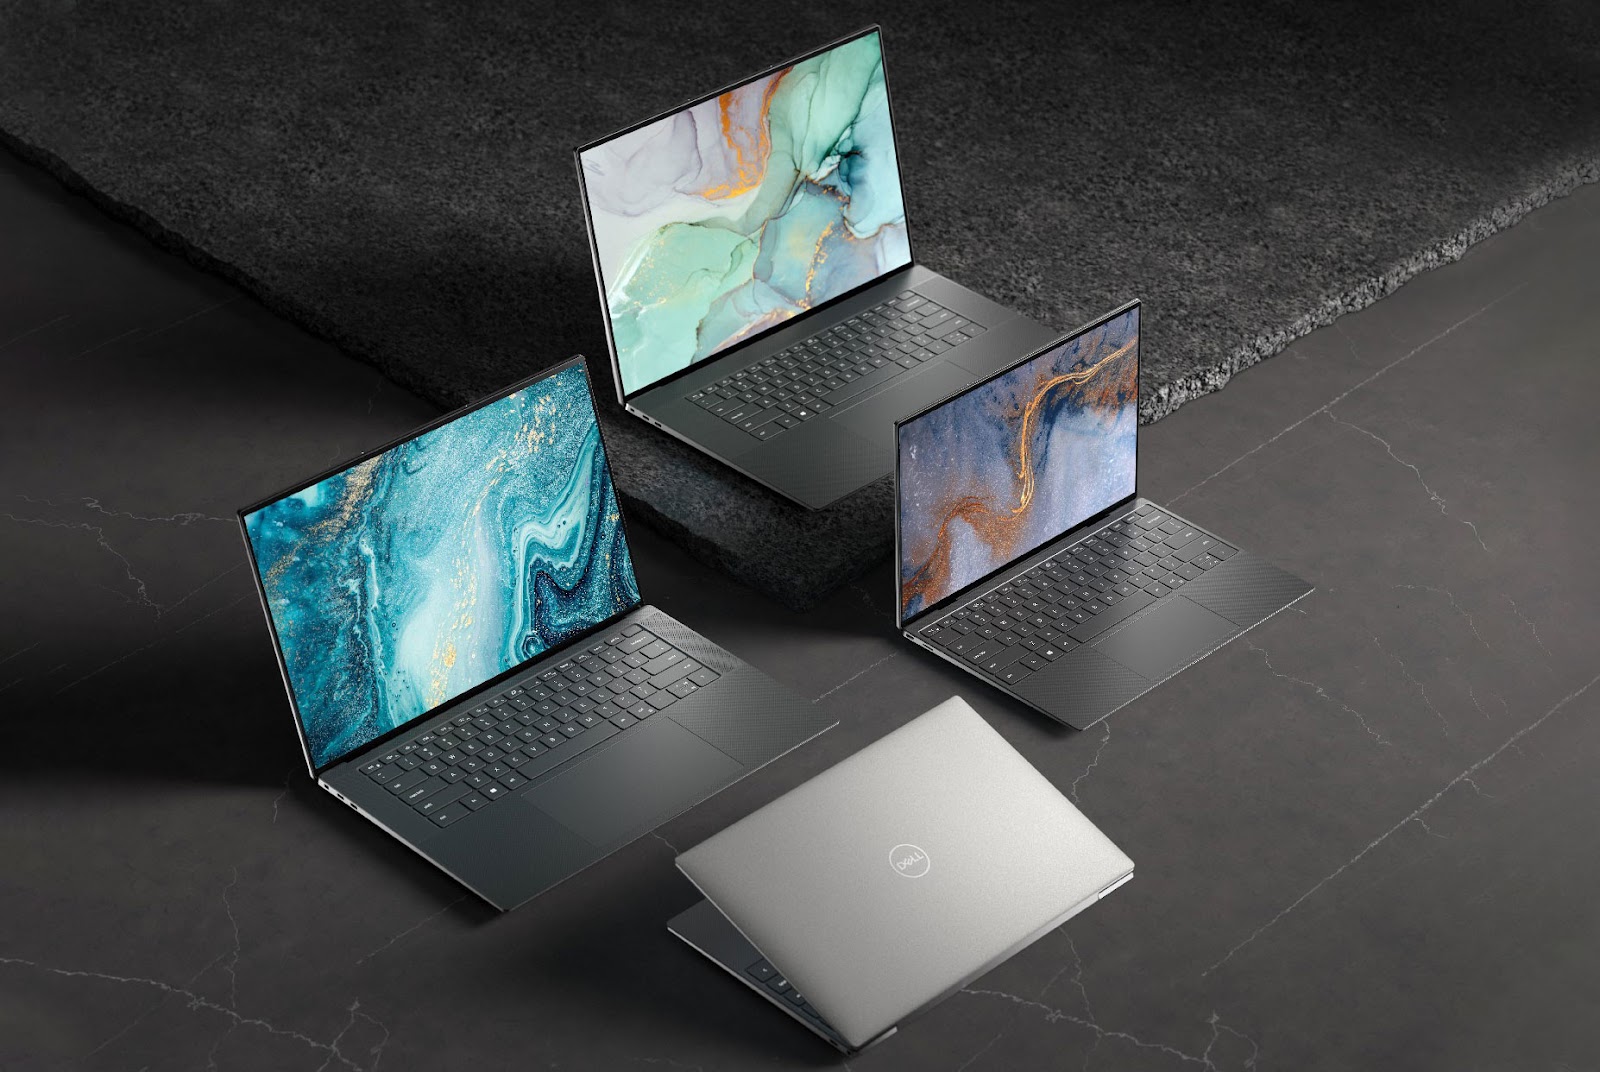 nRgIrkViUk5k10 E8BHIPH7pNejczAfuJS0hDuyhLRccIrngR91Hm8tkPrMuI Rfc8bdo6lBjK6zL0UHQNL9o Tổng hợp các dòng laptop Dell được ưa chuộng - Đâu là lựa chọn phù hợp với bạn?